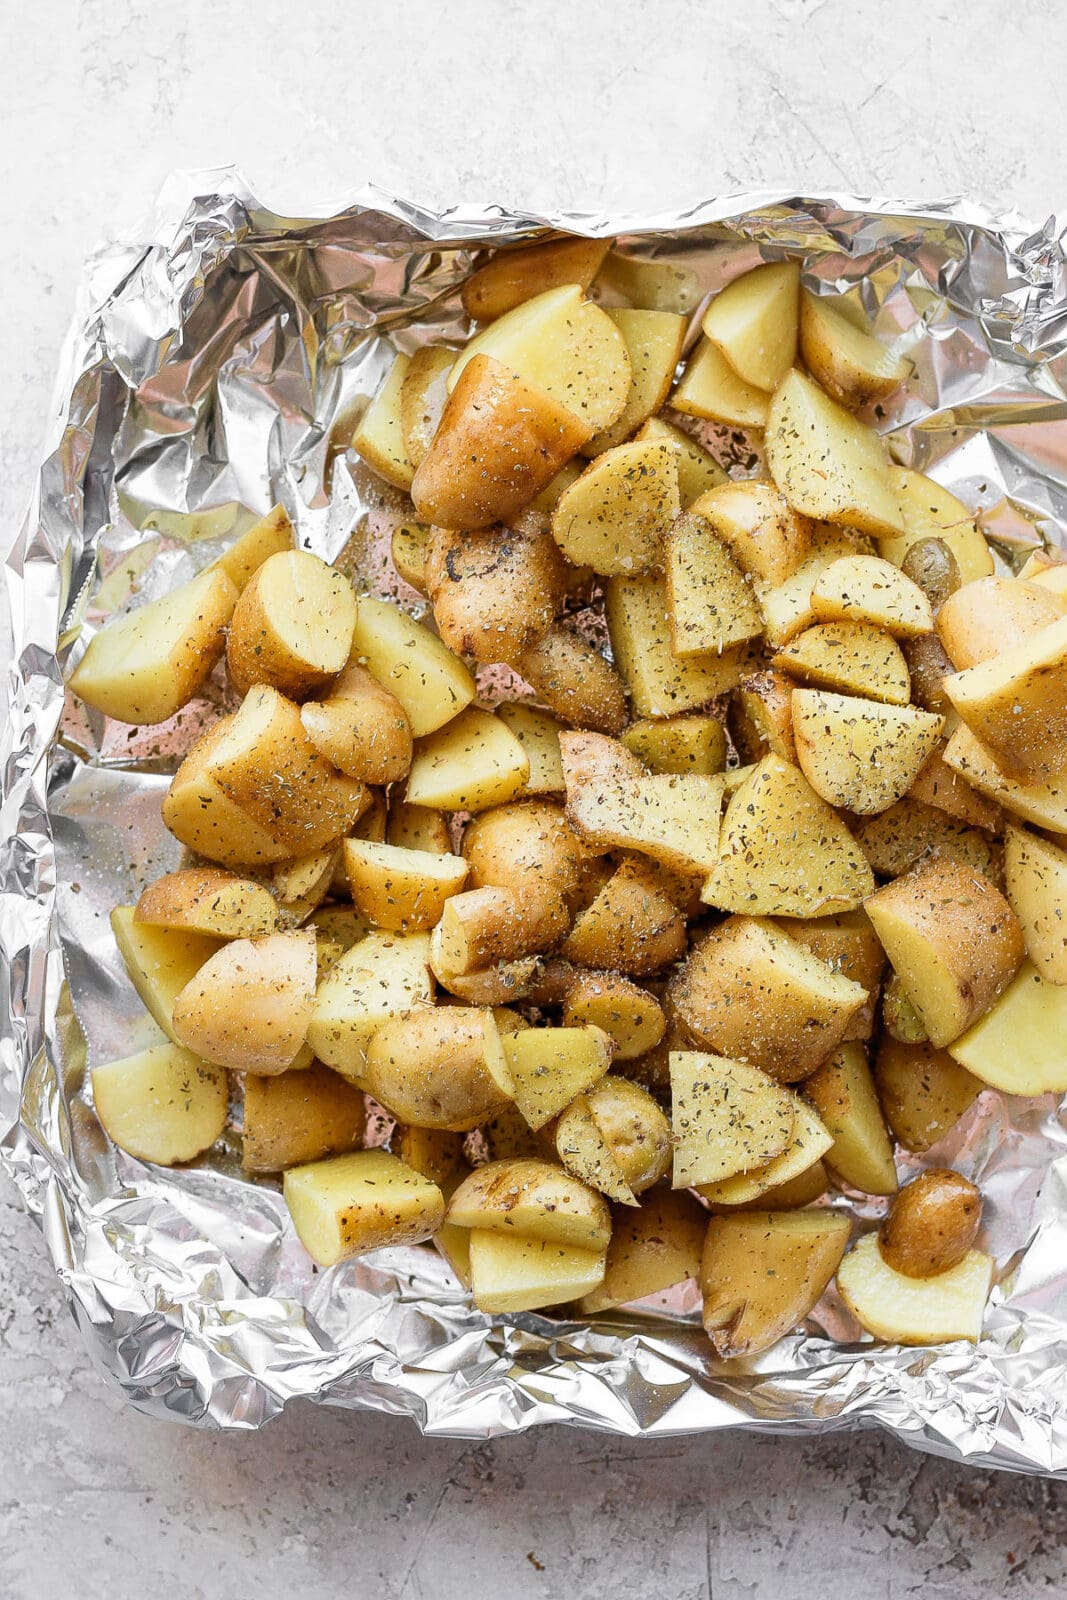 Seasoned potatoes in an aluminum foil boat.